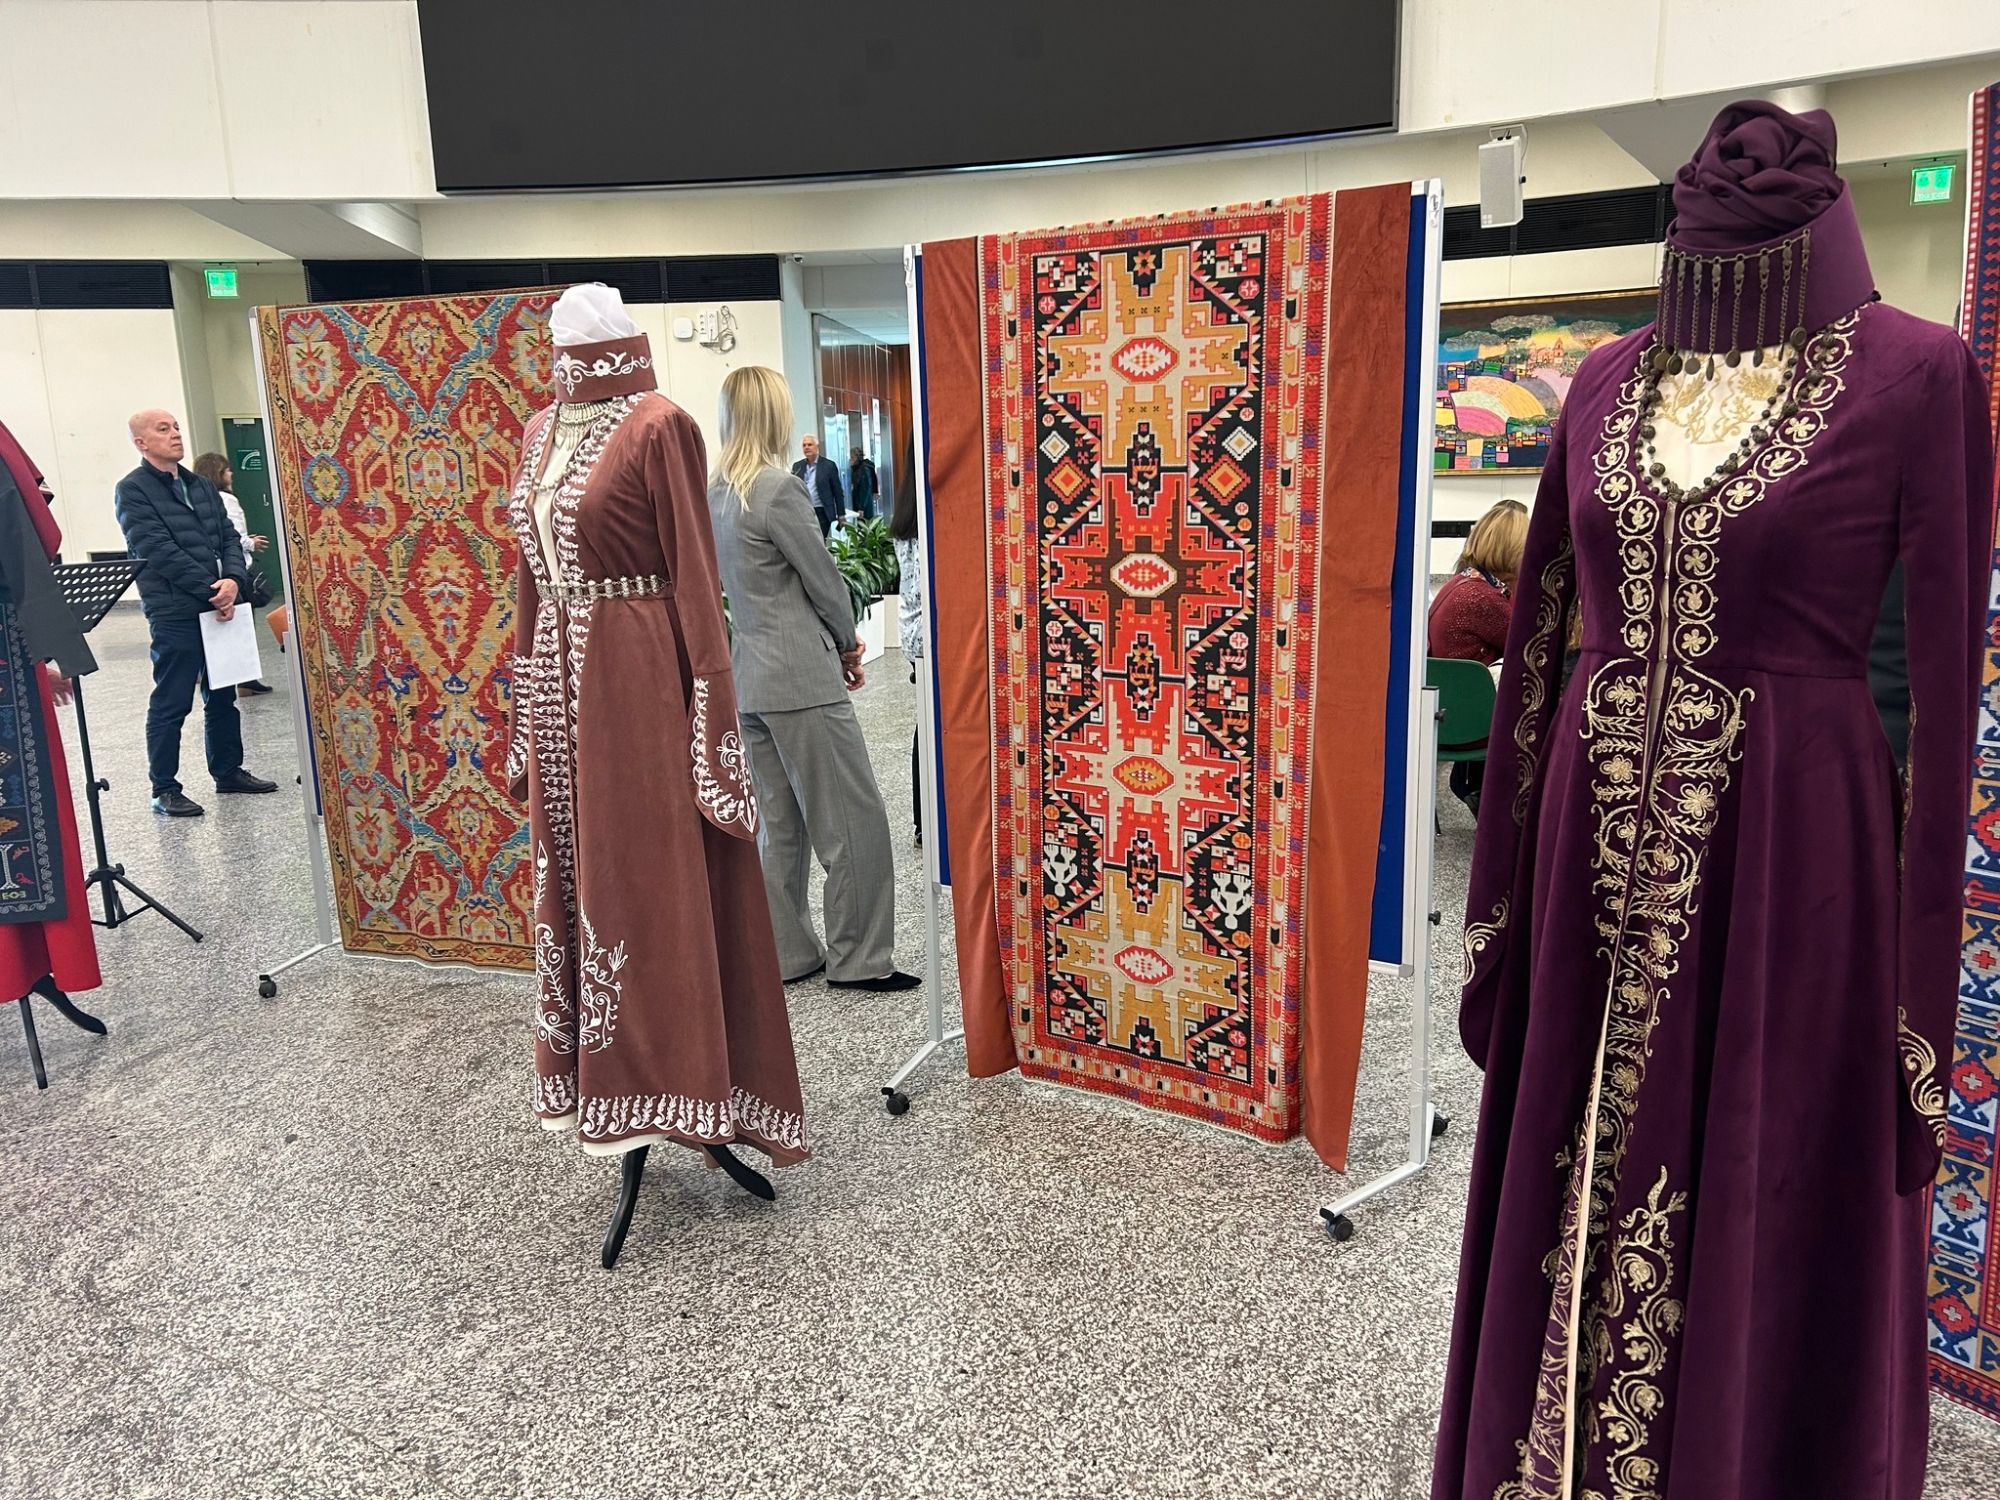 Վիեննայի ՄԱԿ-ի գրասենյակում բացվել է հայկական ավանդական տարազների և գորգերի մեկշաբաթյա ցուցադրություն